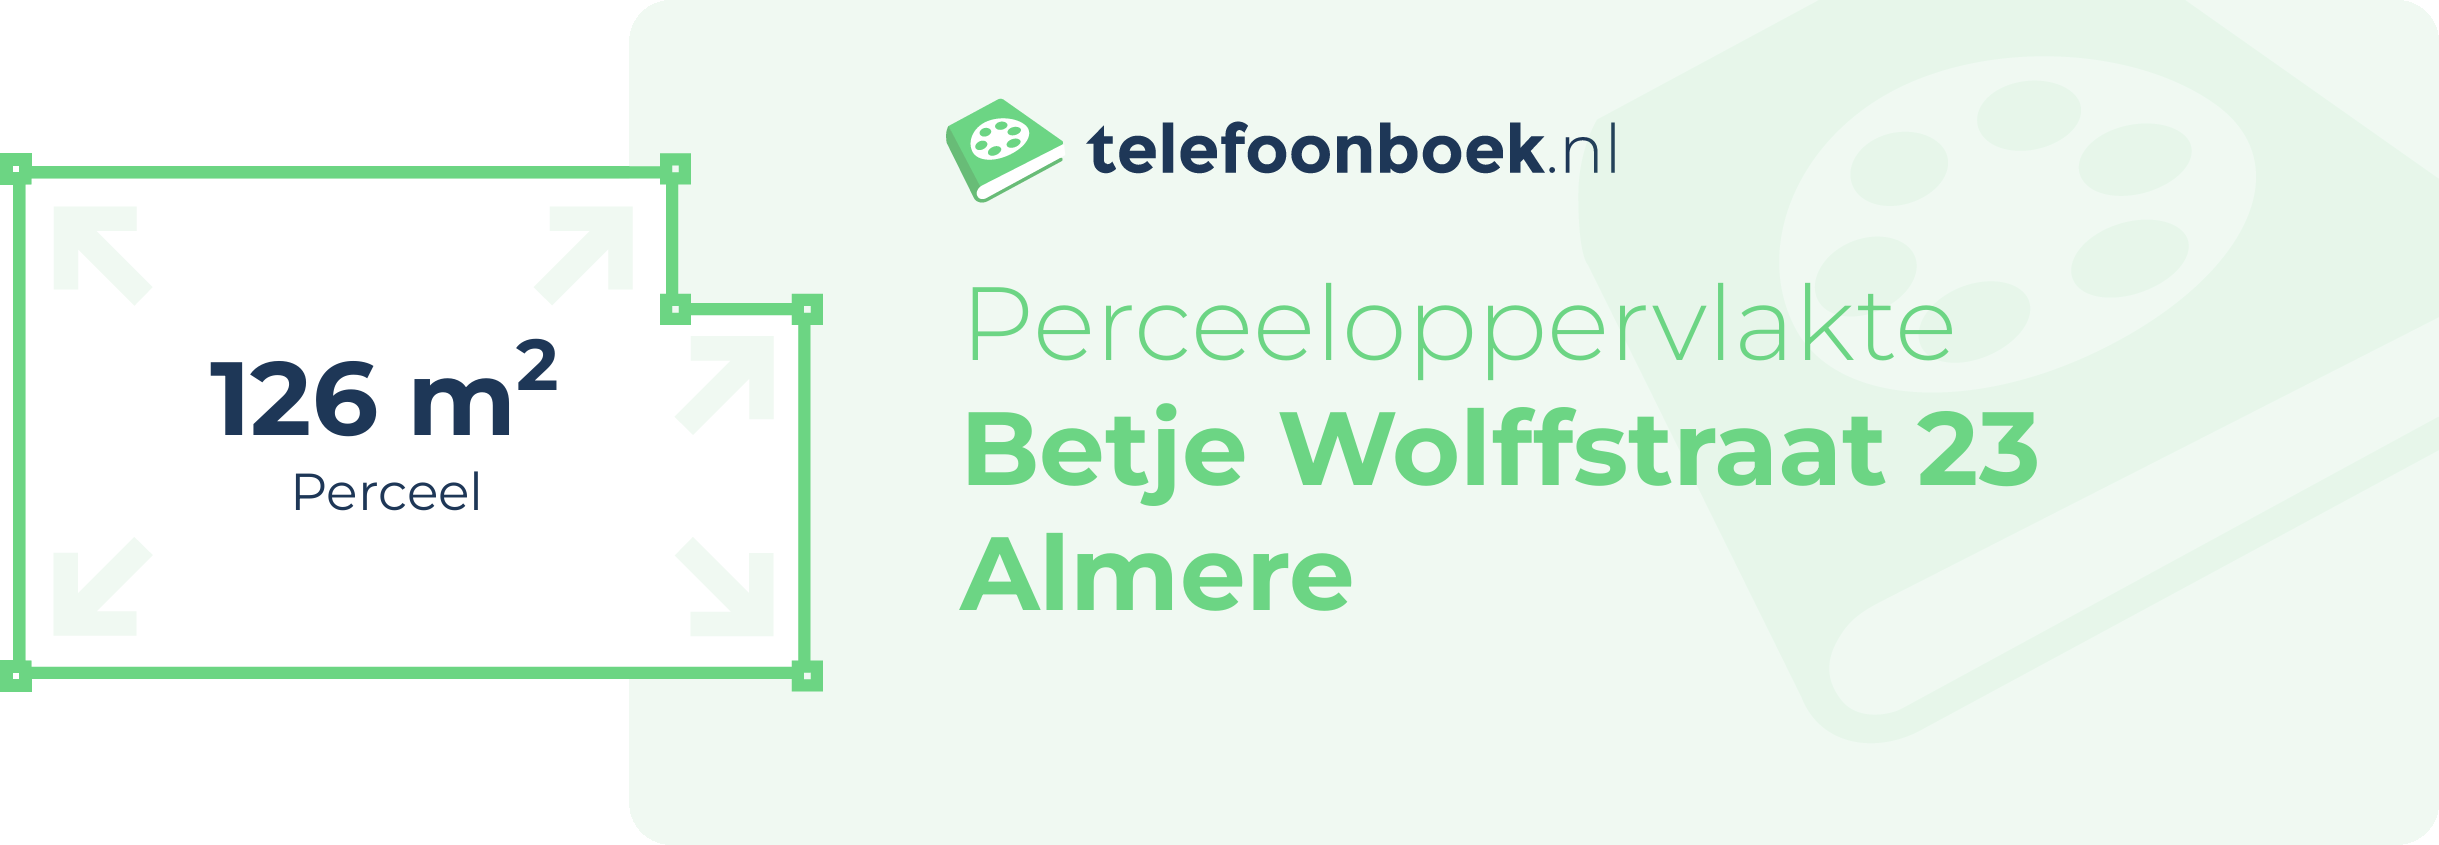 Perceeloppervlakte Betje Wolffstraat 23 Almere